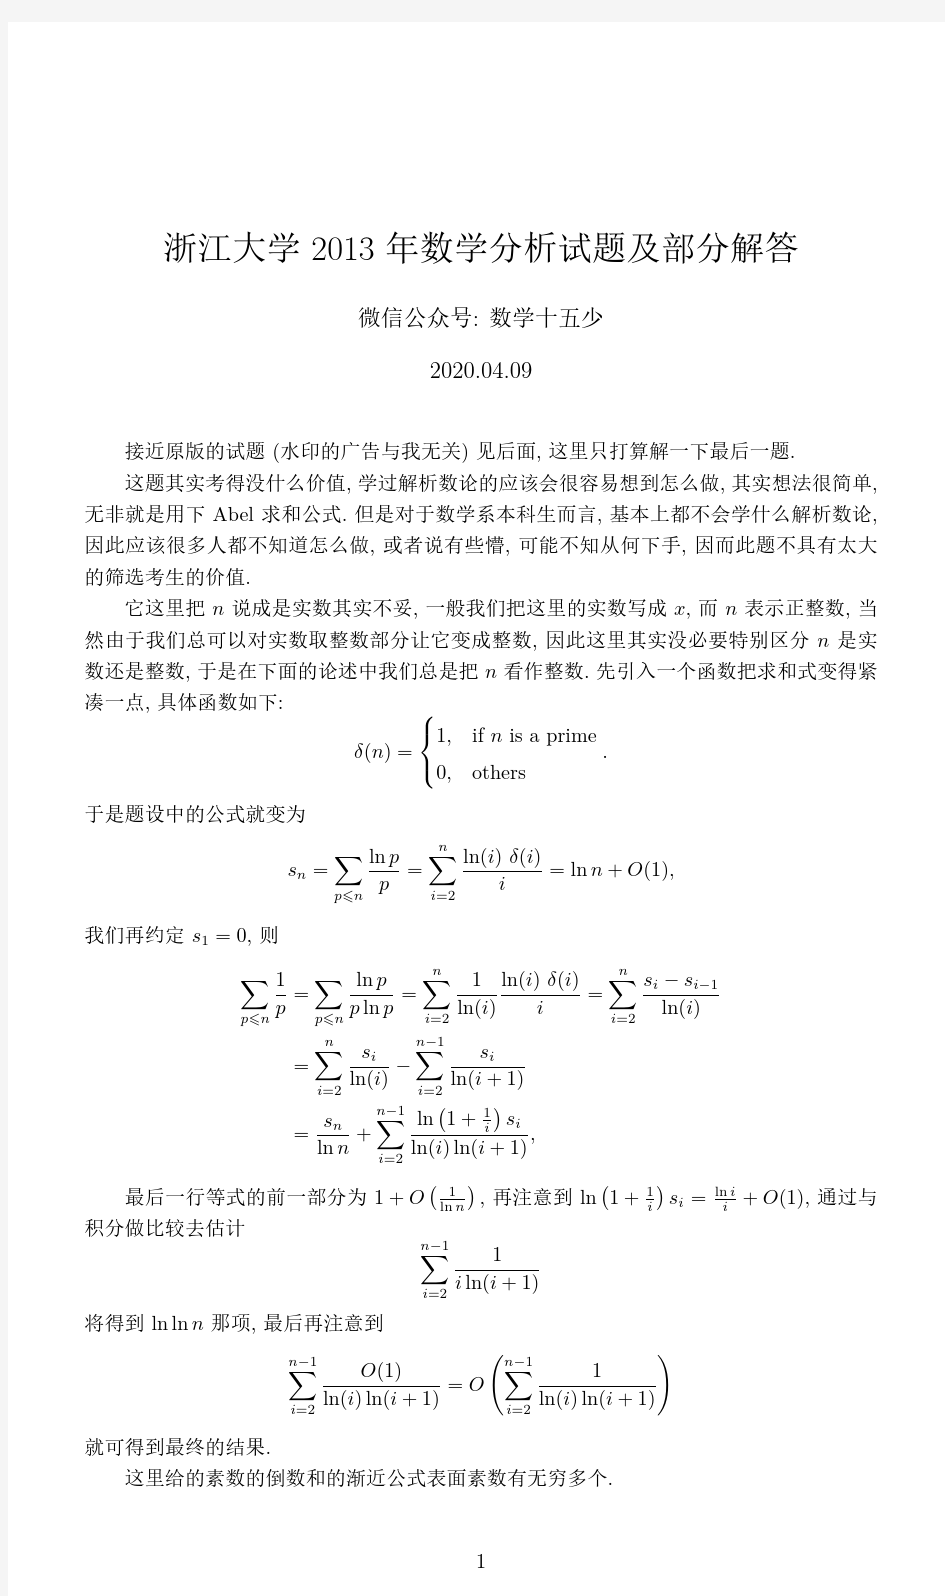 浙江大学2013年数学分析考研试题及解答(部分)